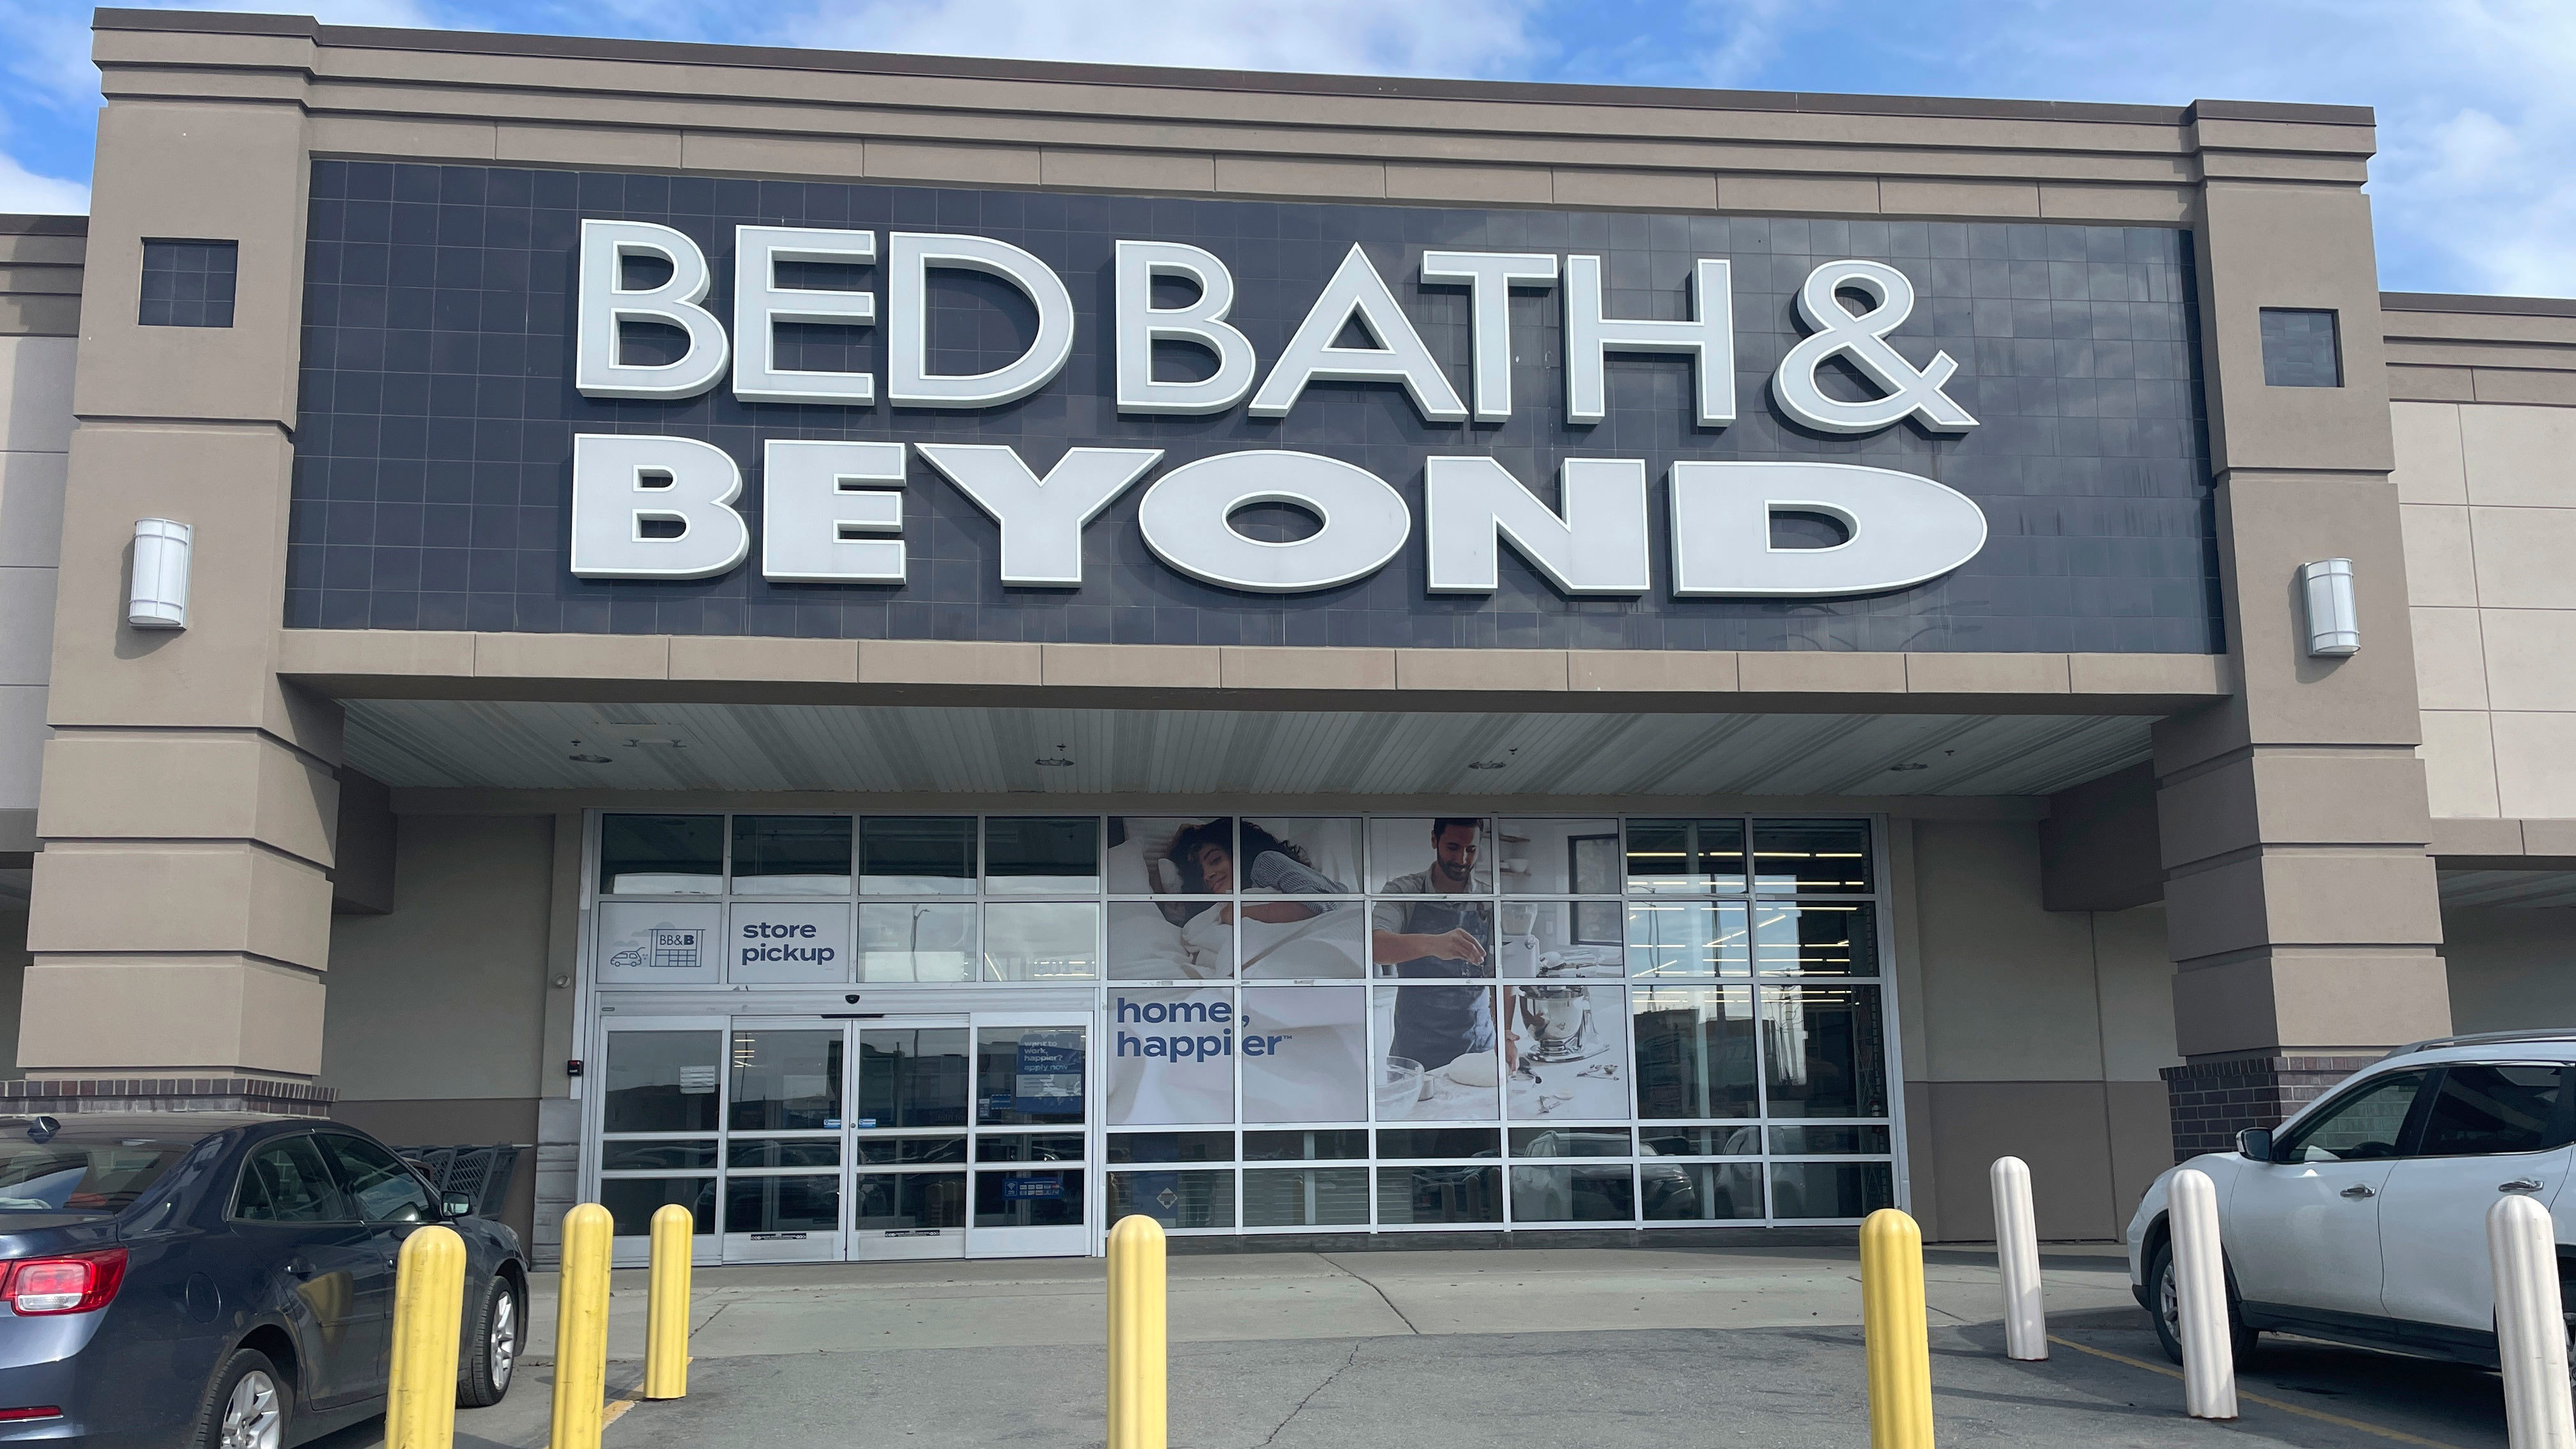 La entrada a una tienda Bed Bath & Beyond se ve en Anchorage, Alaska, el domingo 23 de abril de 2023. La compañía se declaró en bancarrota el domingo, luego de años de pérdidas y ventas pésimas y numerosos planes de recuperación fallidos.